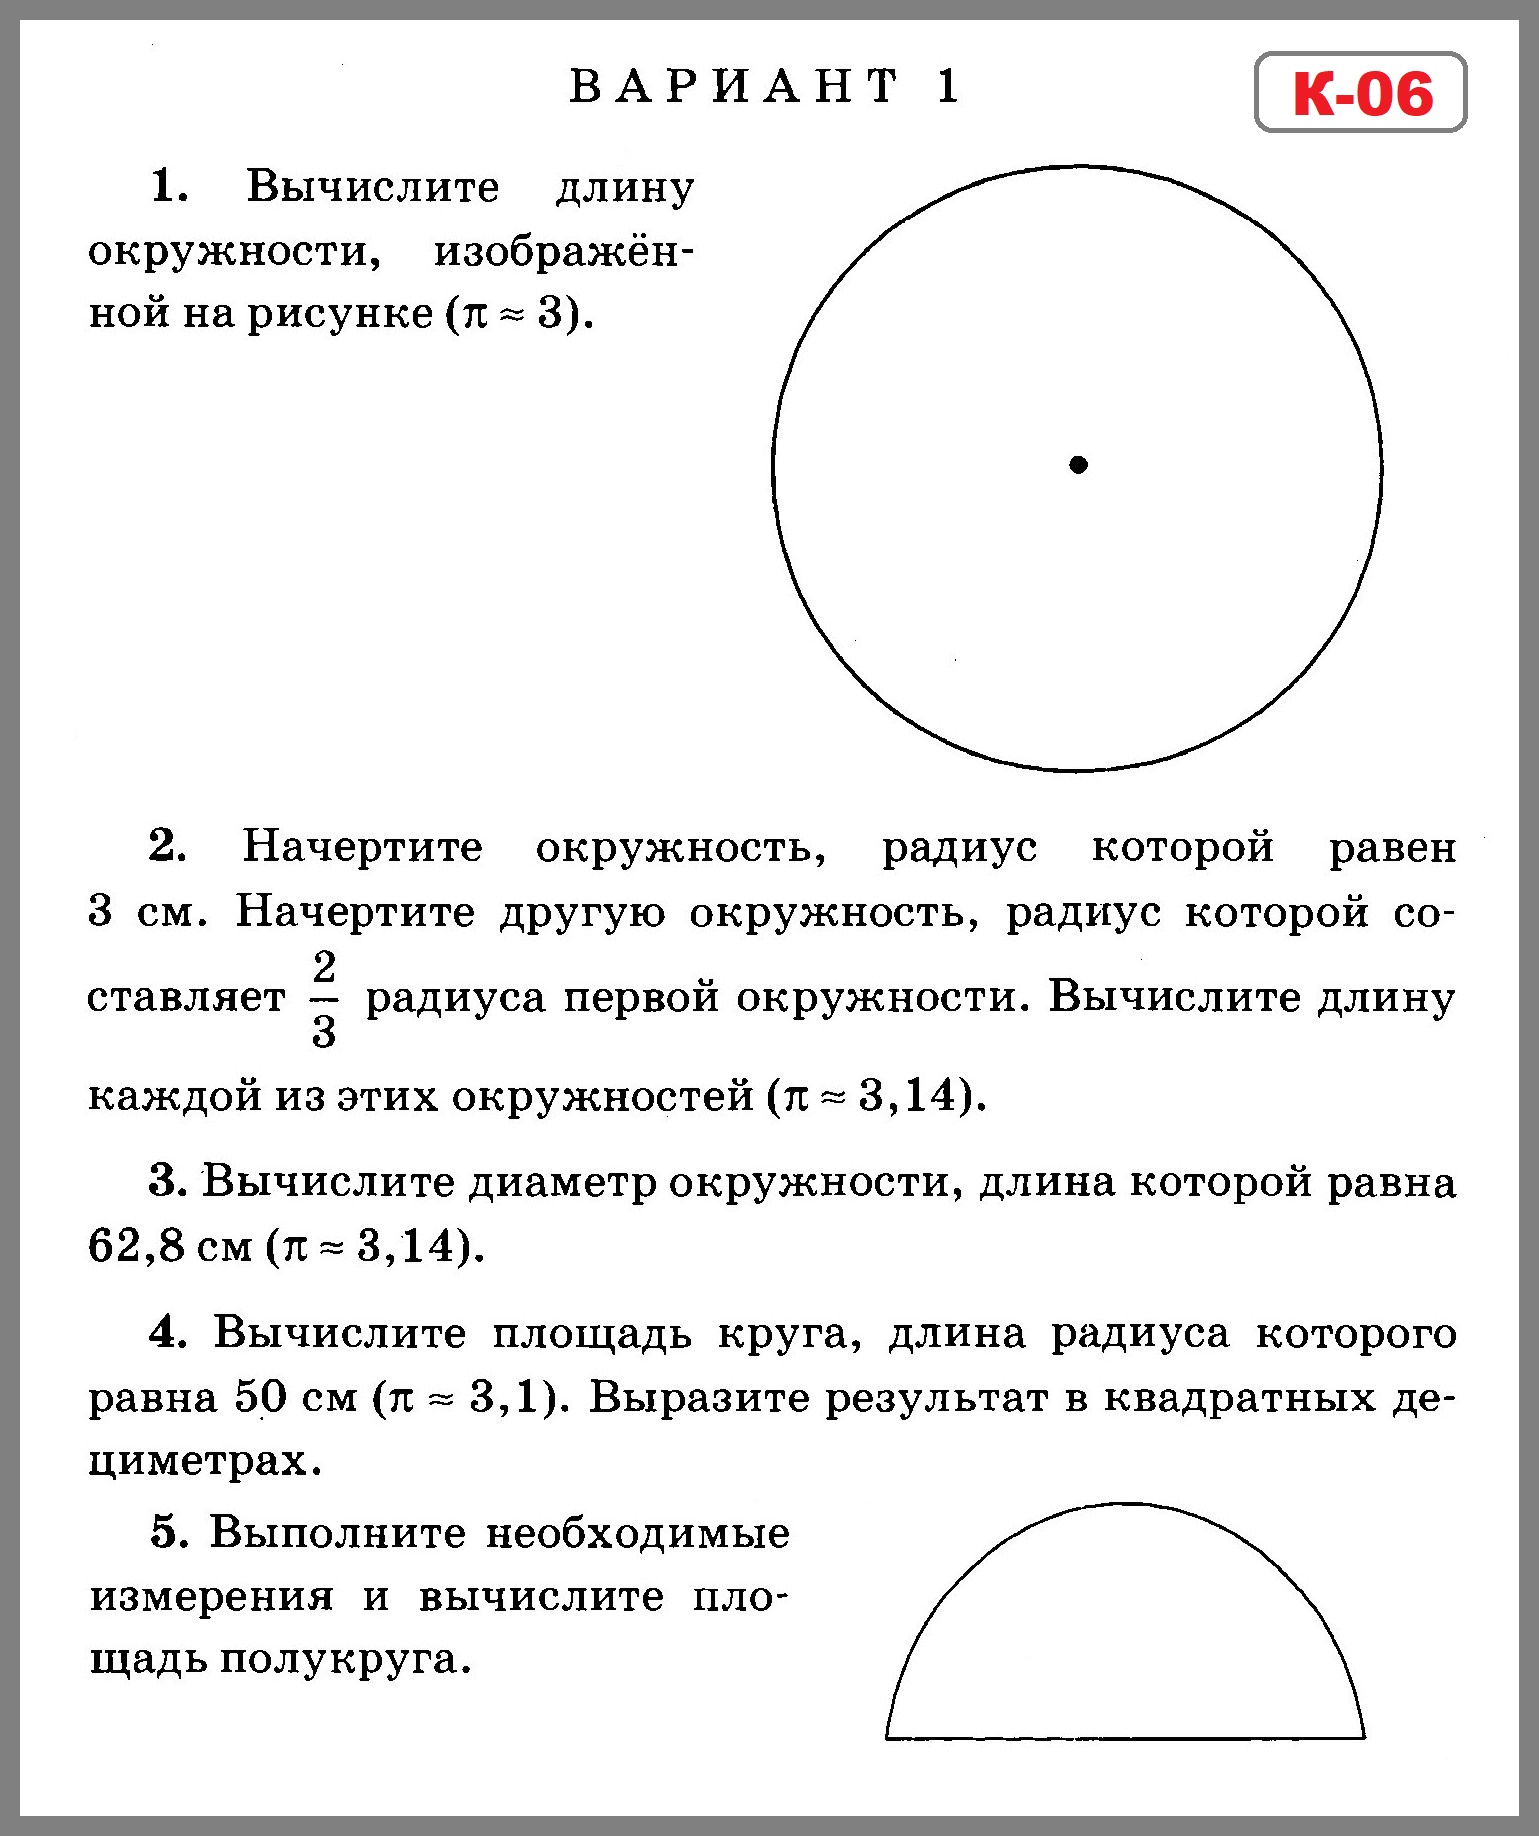 Практическая работа окружность круг. Задания по математике 3 класс окружность круг. Проверочные 6 класс математика окружность и круг. Урок математики в 6 классе длина окружности и площадь круга Мерзляк. Задания по математике 6 класс окружность и круг.